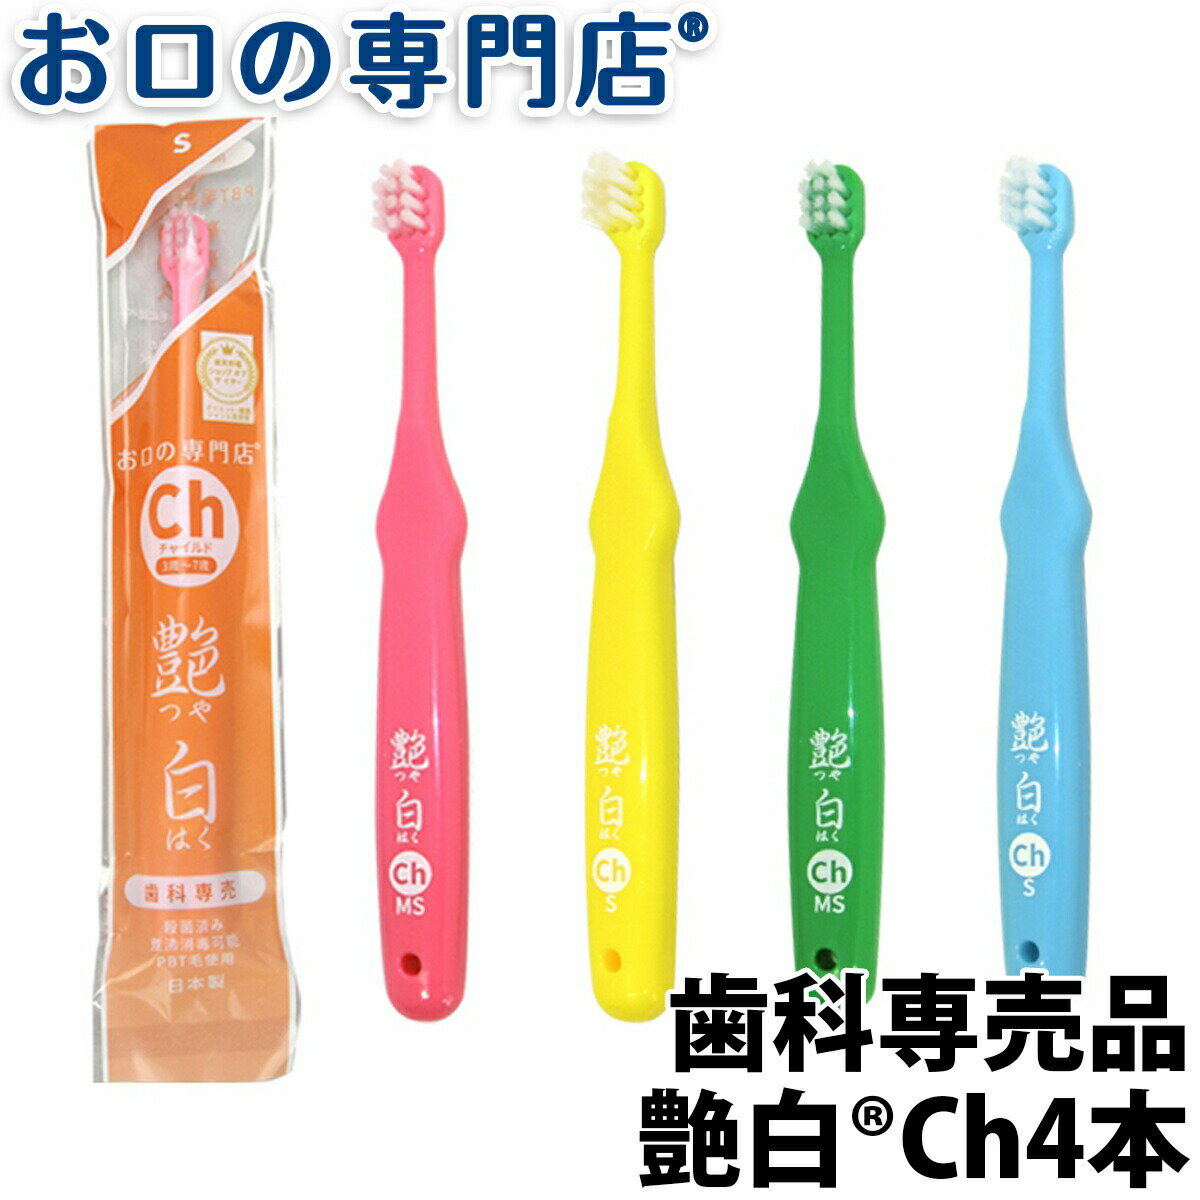 【送料無料】名入れ 歯ブラシ 子供用 艶白Chチャイルド ×4本(S/MSそれぞれ2本ずつ)日本製 歯科専売品【2色以上のアソ…